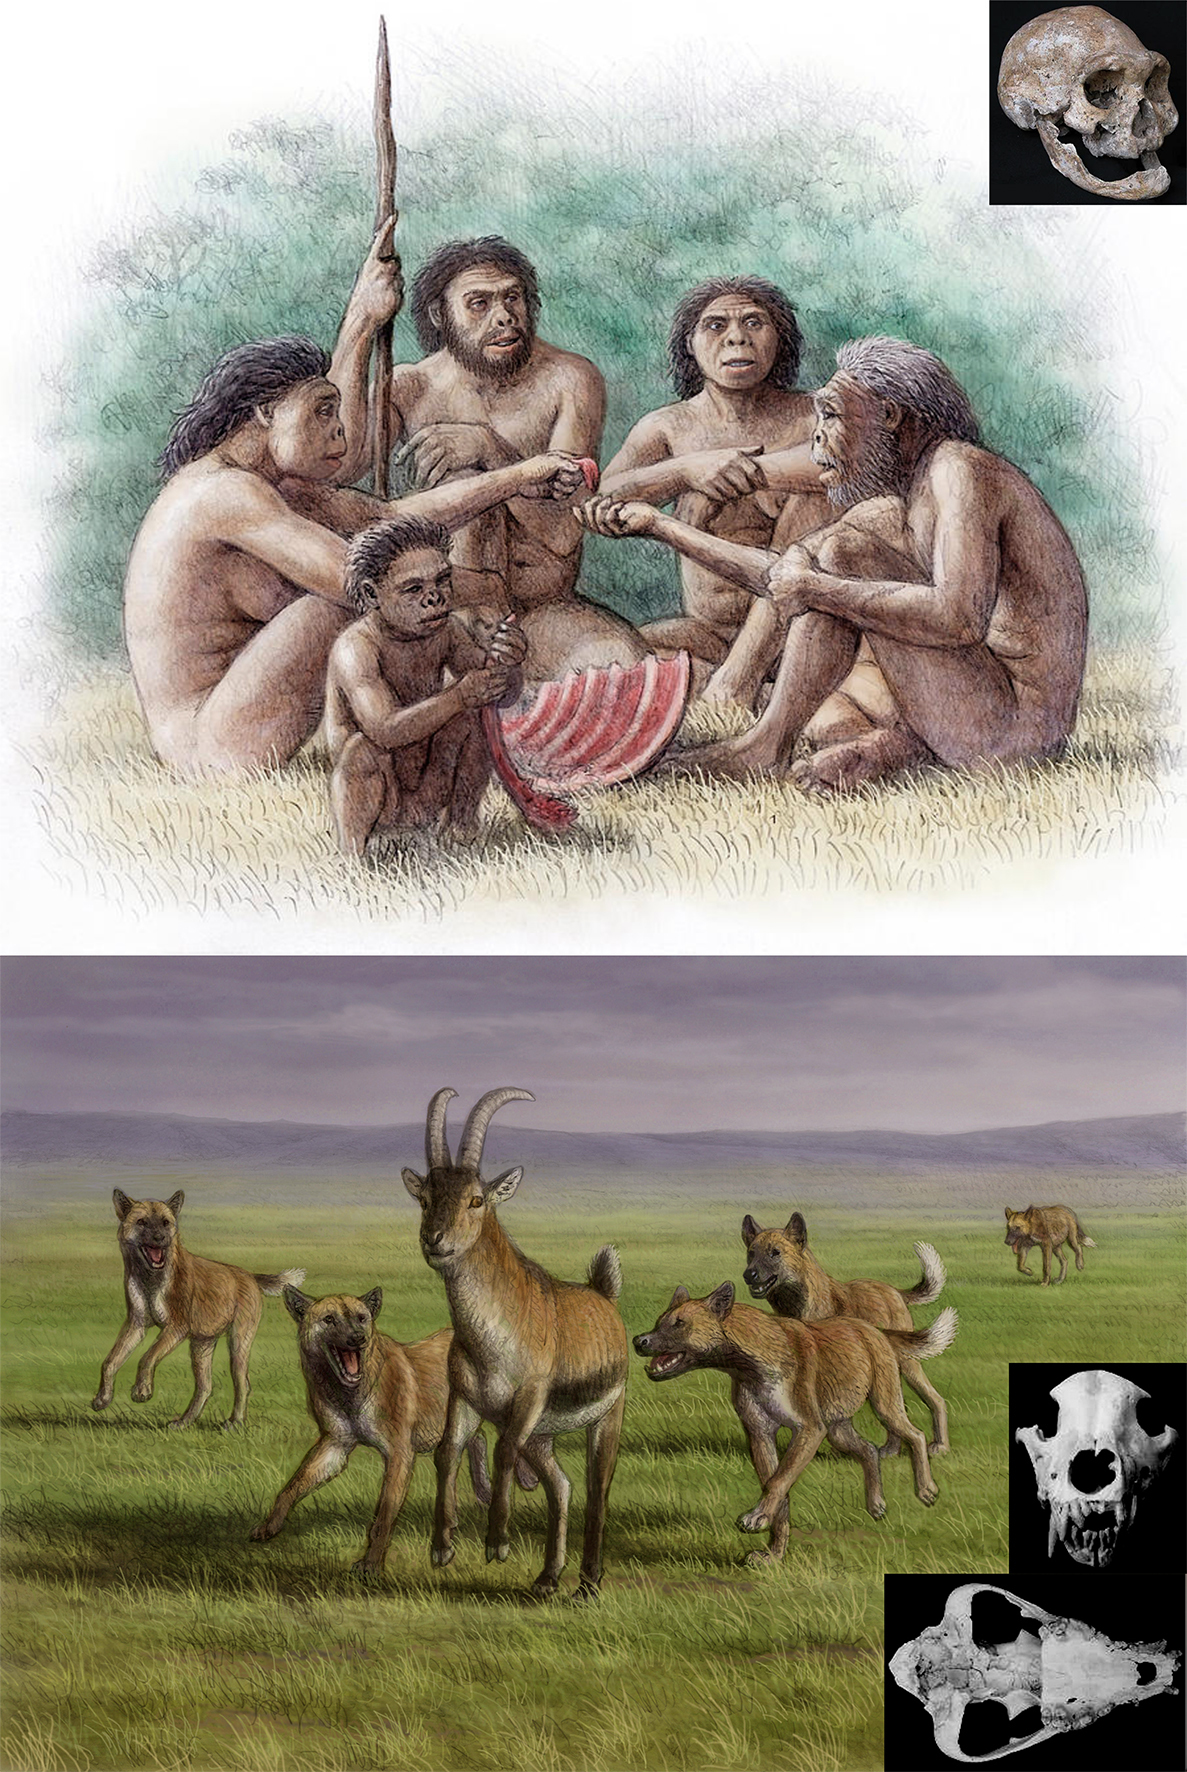 Arriba, recreación de una escena basada en un hallazgo paleontológicos: un grupo de 'Homo erectus' en el que uno de los individuos ha perdido todos sus dientes y necesita ayuda del grupo para sobrevivir; abajo, dos perros eurásicos cazando una cabra de la especie 'Hemitragus albus'